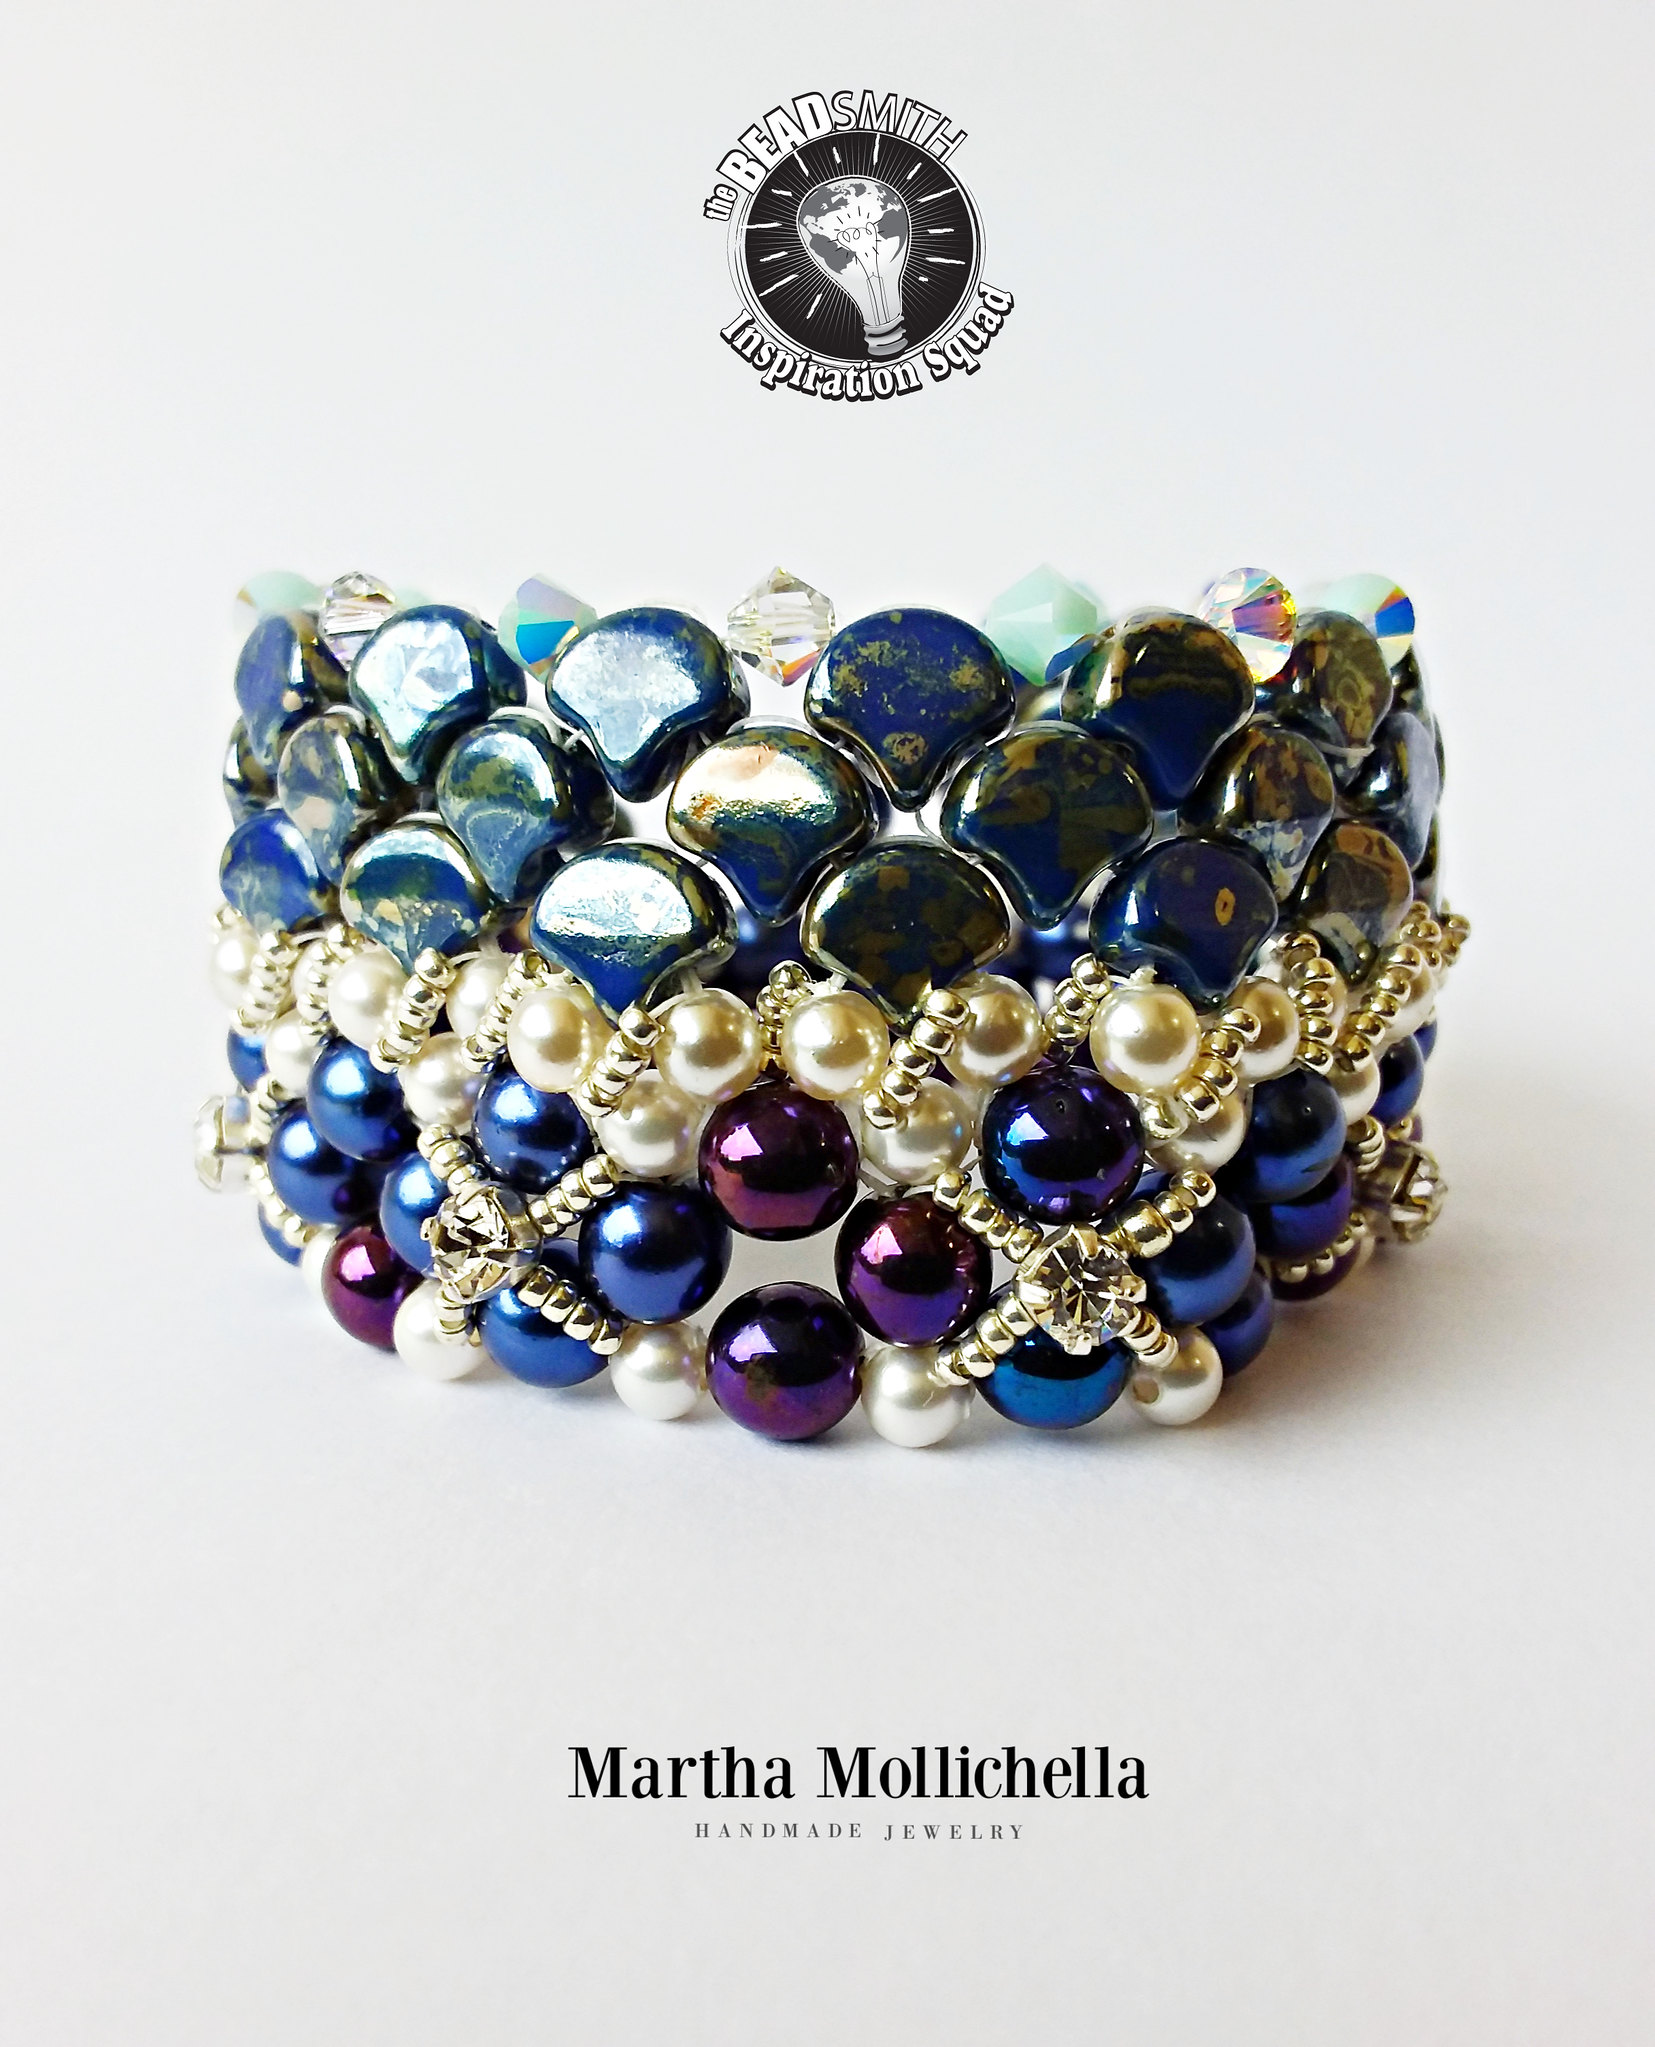 Martha Mollichella design jewelry specialist design made in Italy